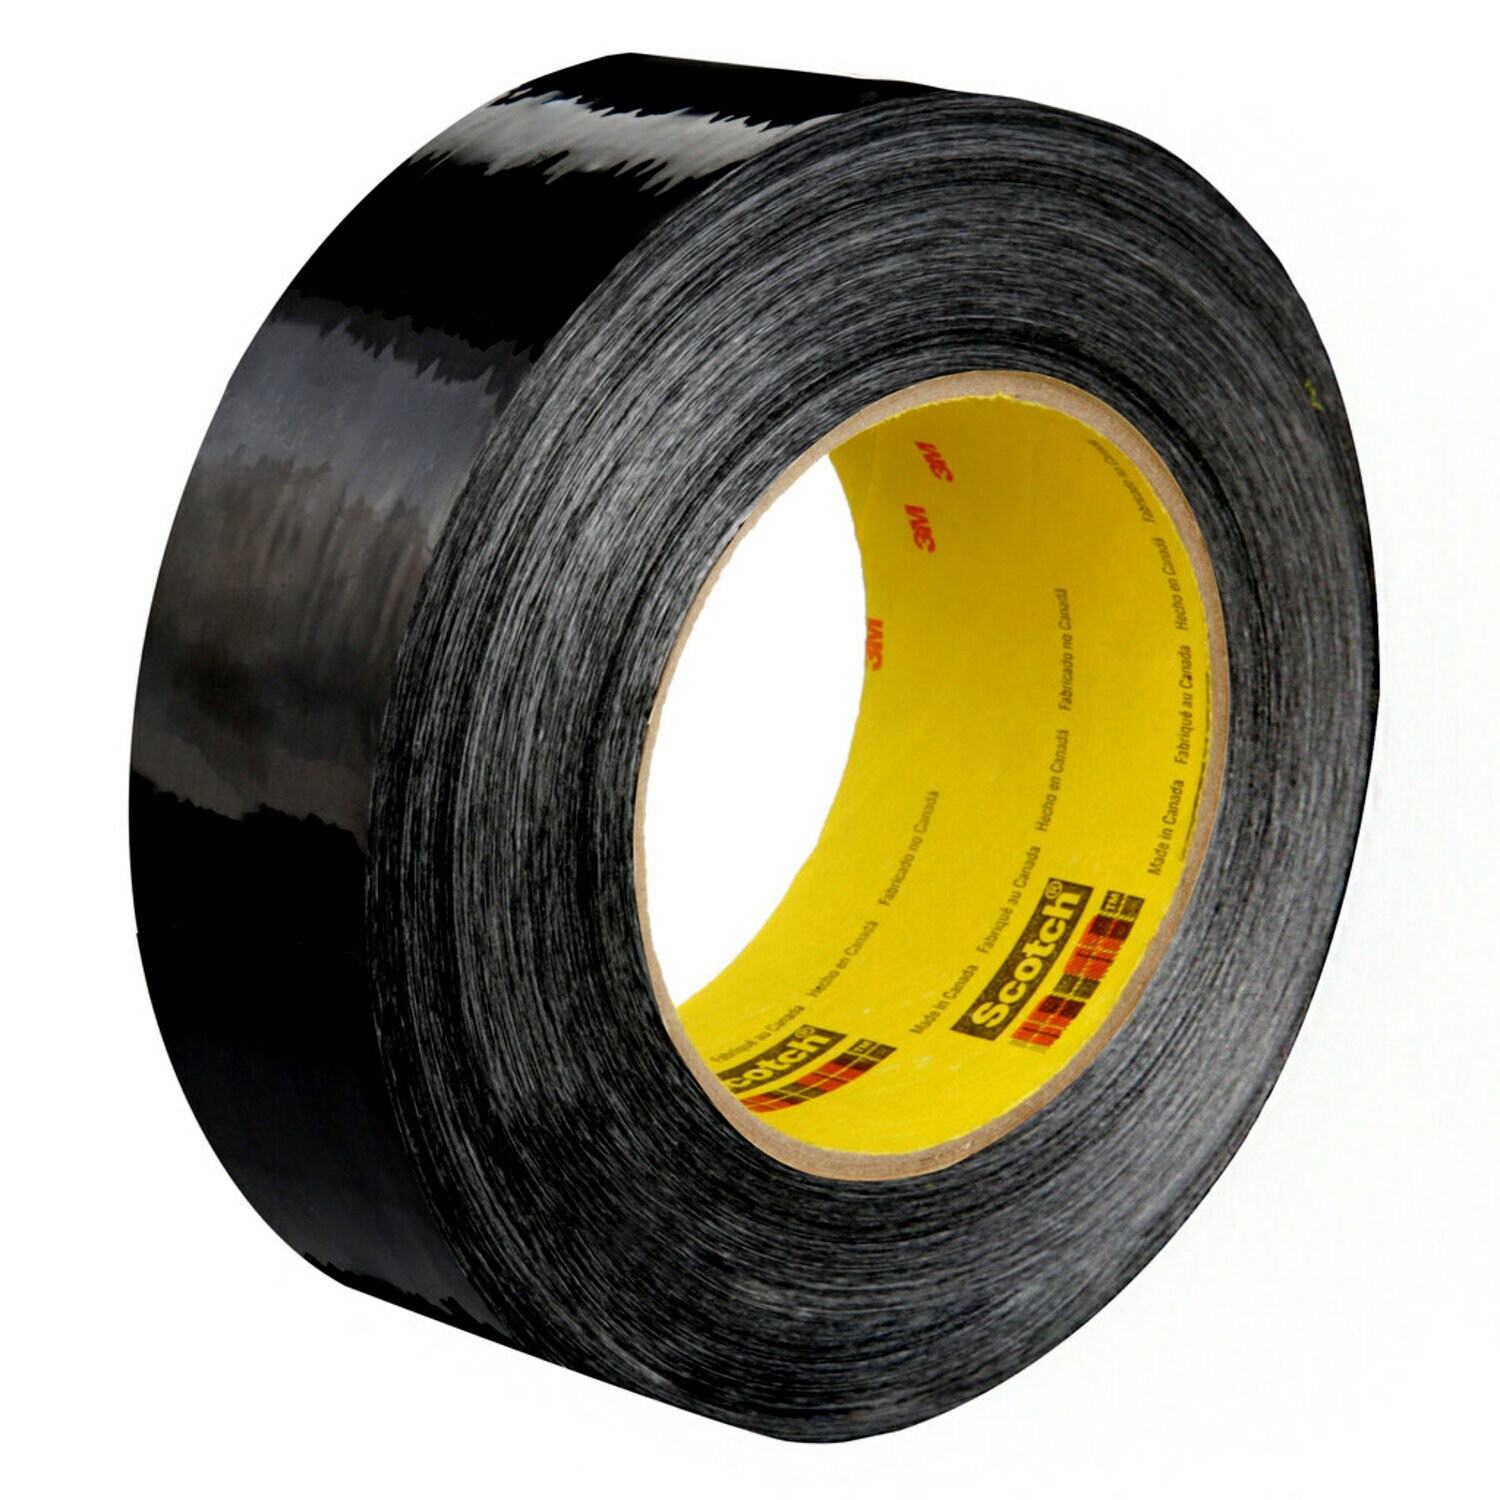 7000137853 - Scotch Filament Tape 890MSR, Black, 36 mm x 55 m, 8 mil, 24 rolls per
case